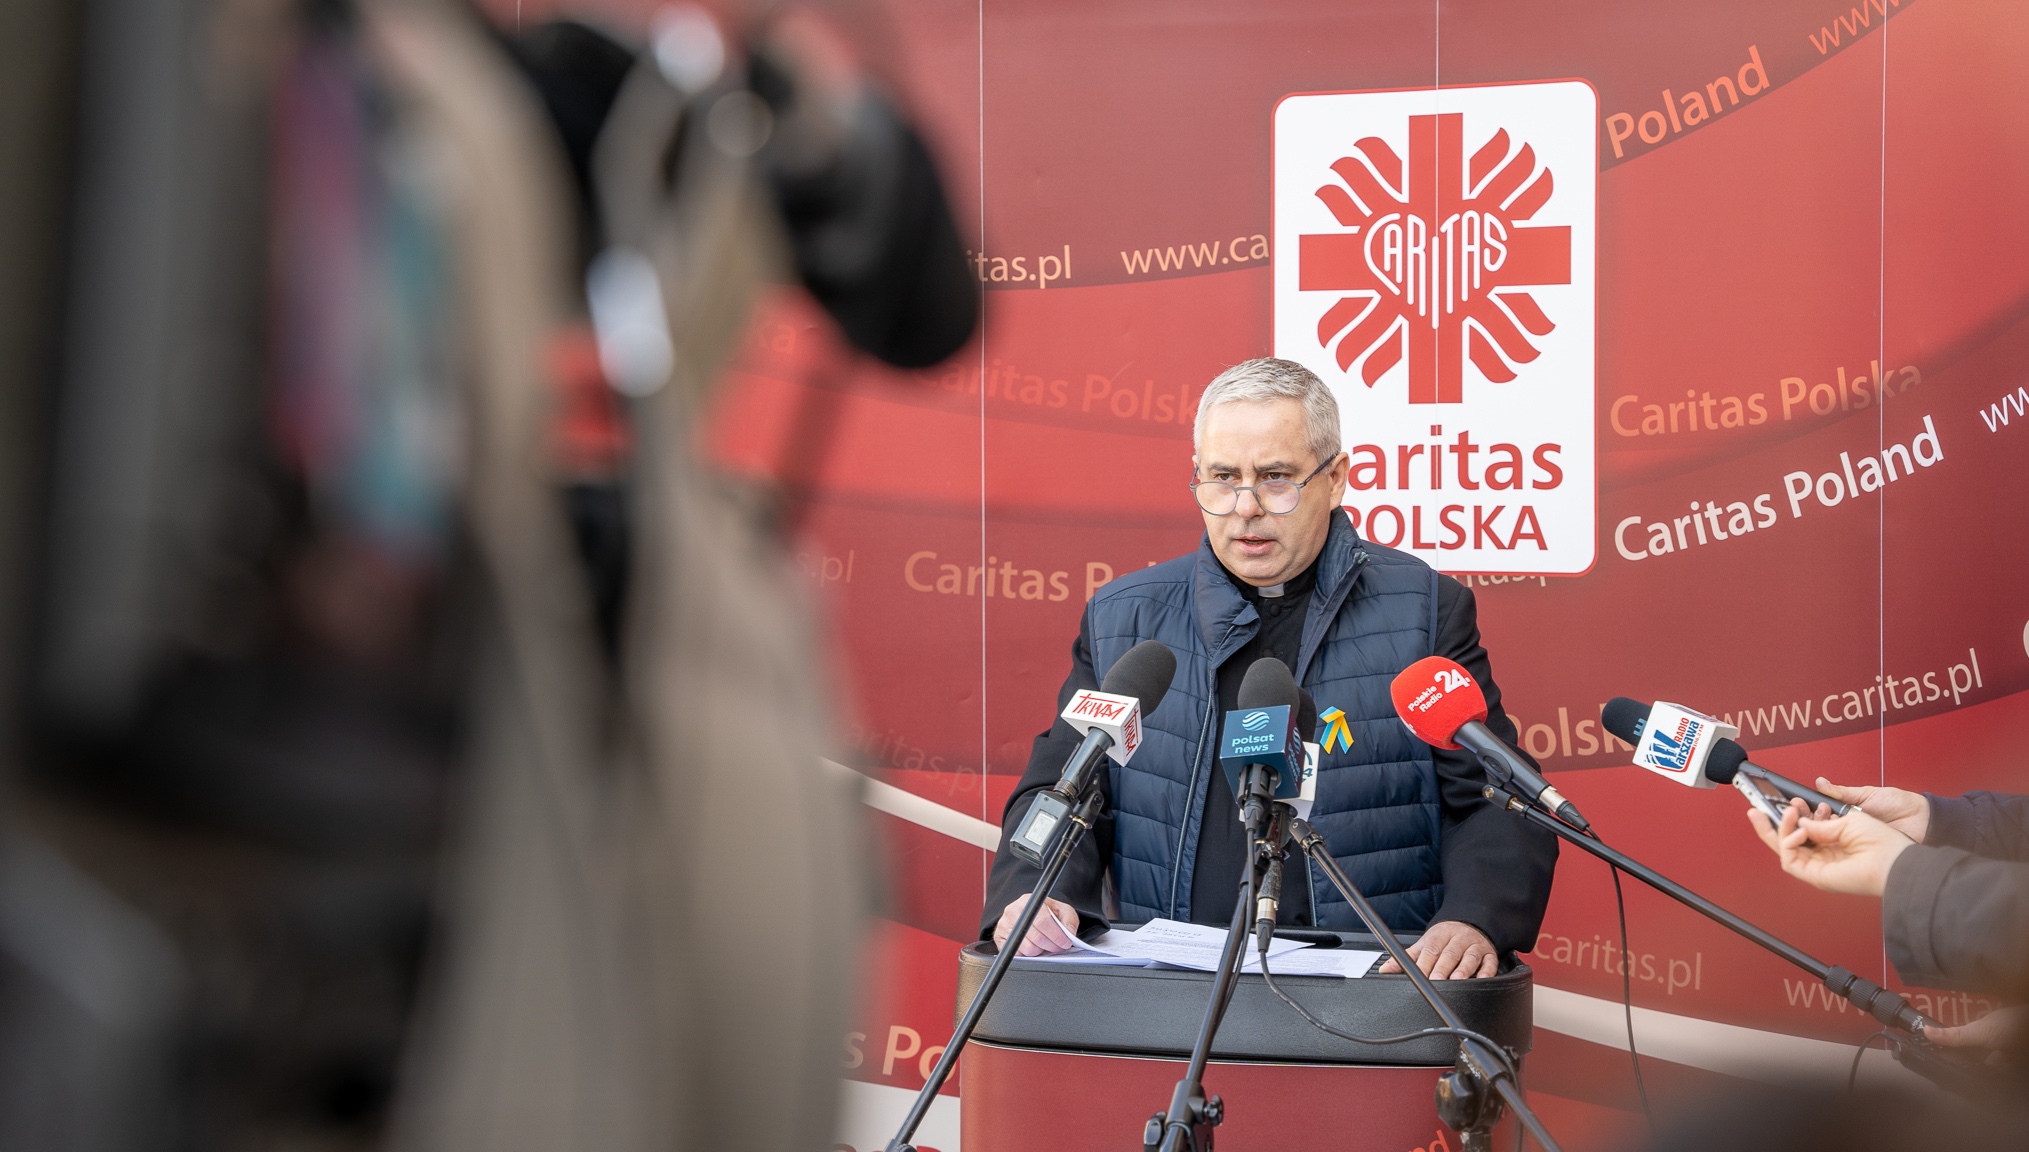 Caritas Polska raised PLN 83 million for Ukrainian refugees